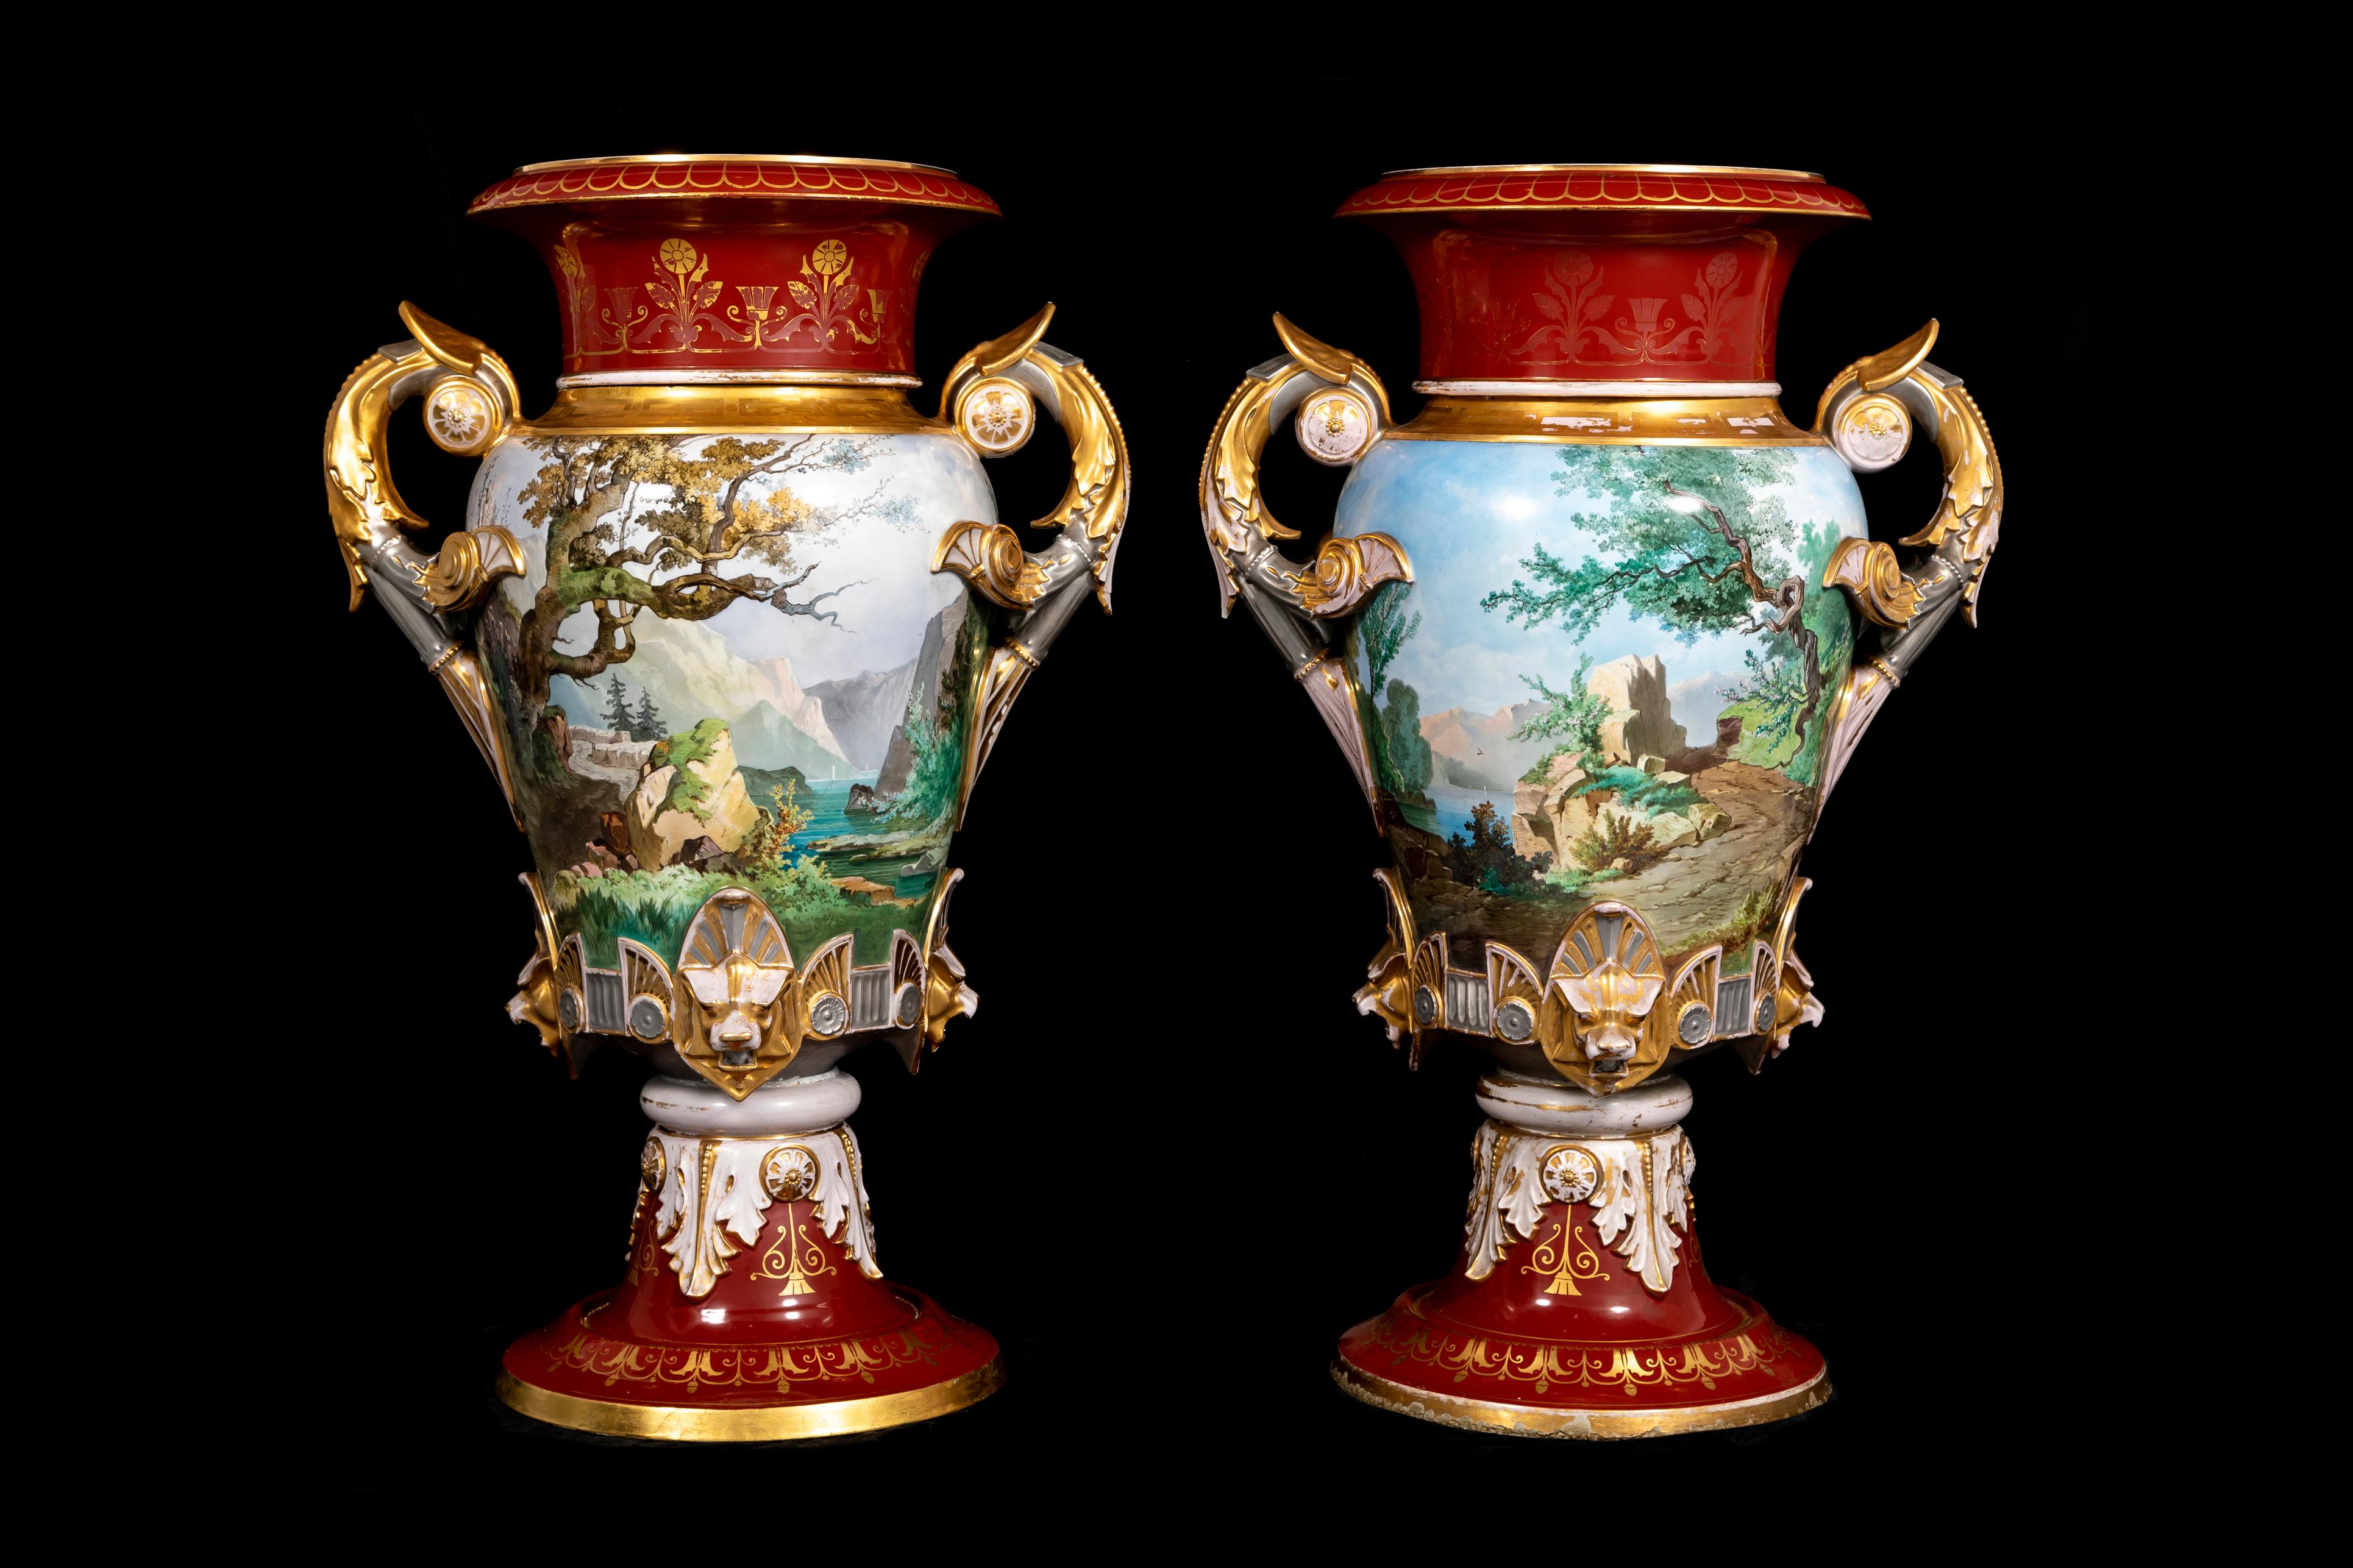 D'une taille magnifique et ornés de détails opulents, ces vases balustres monumentaux ont été créés en 1876 et portent la signature d'A. Carrier Hammer. Ils mesurent une hauteur impressionnante de 43½ pouces. Les bouches évasées sont ornées d'un